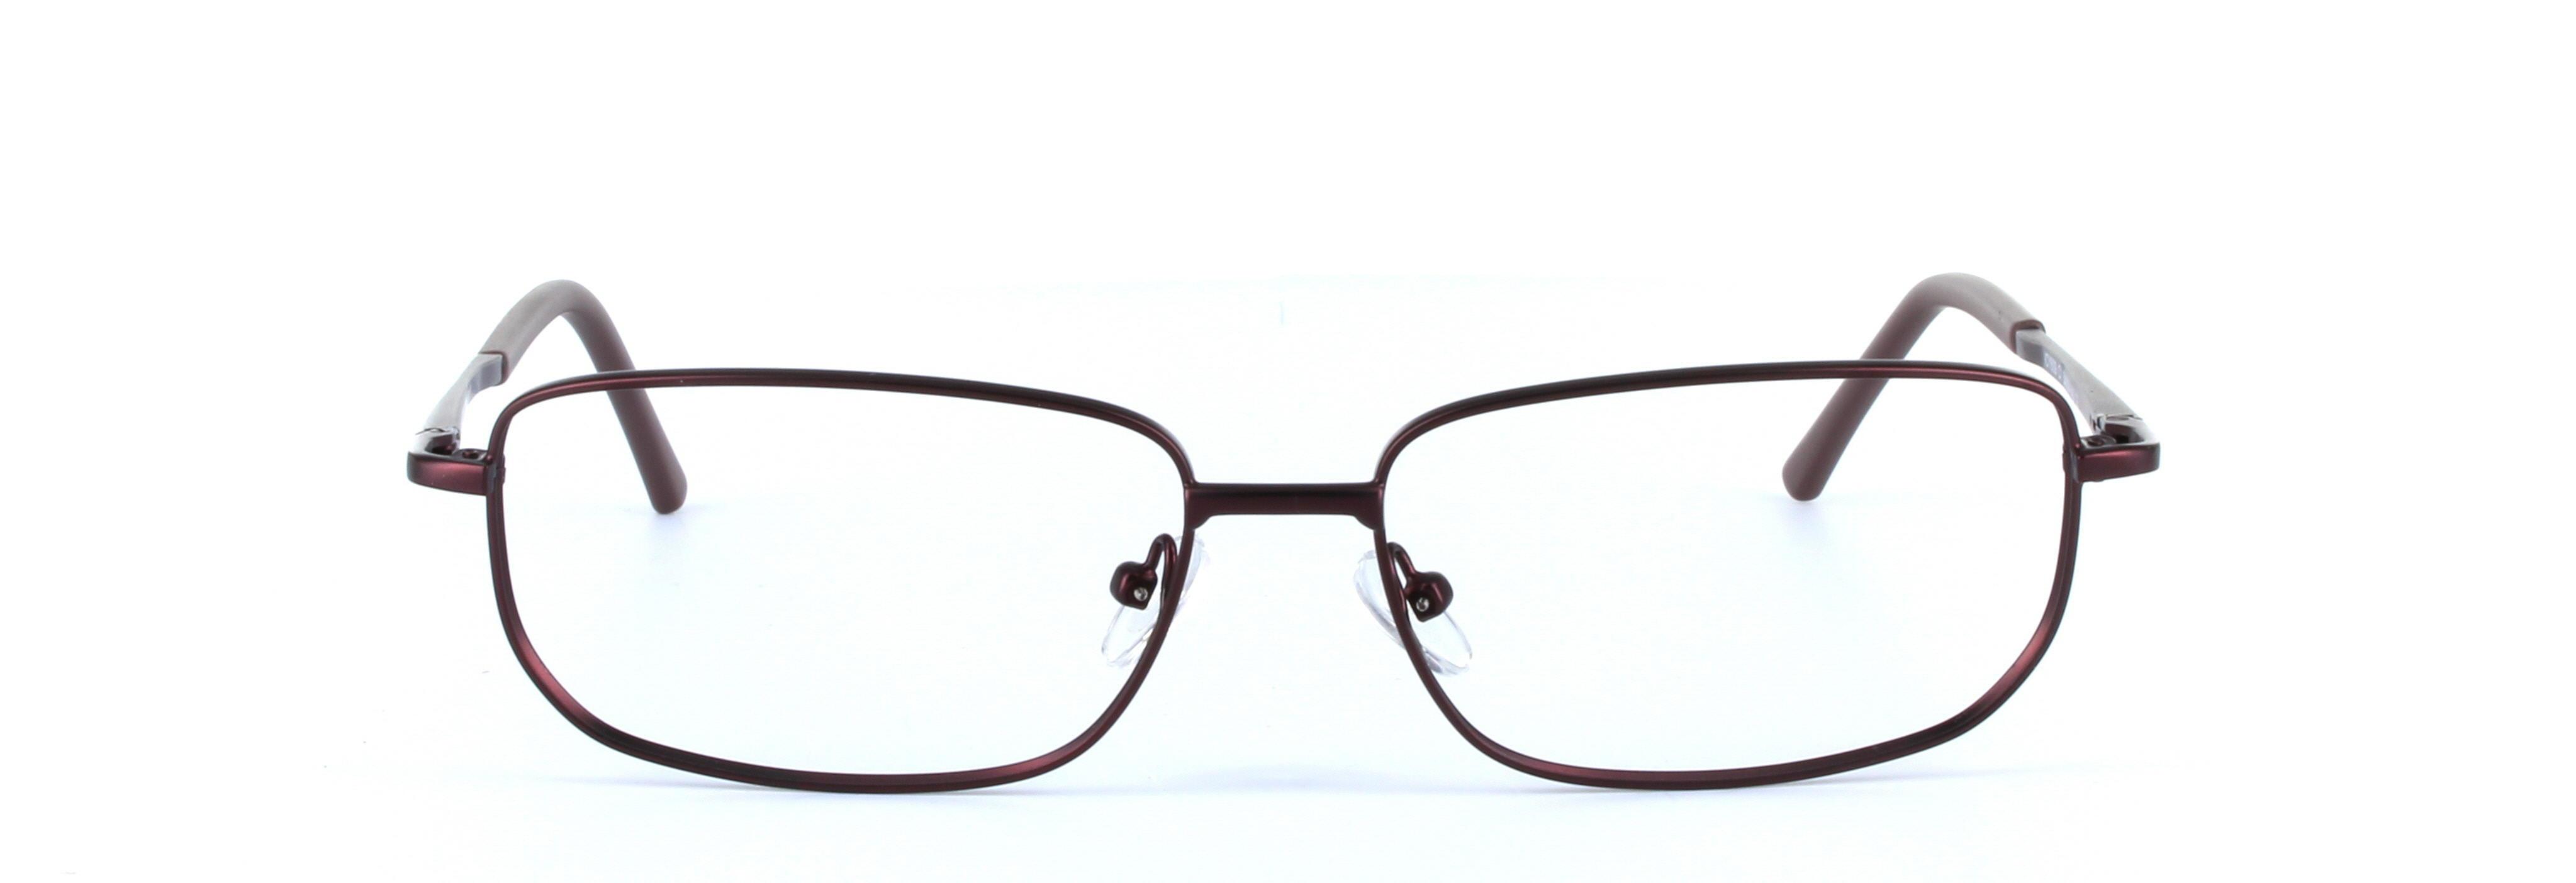 Alex Burgundy Full Rim Rectangular Metal Glasses - Image View 5